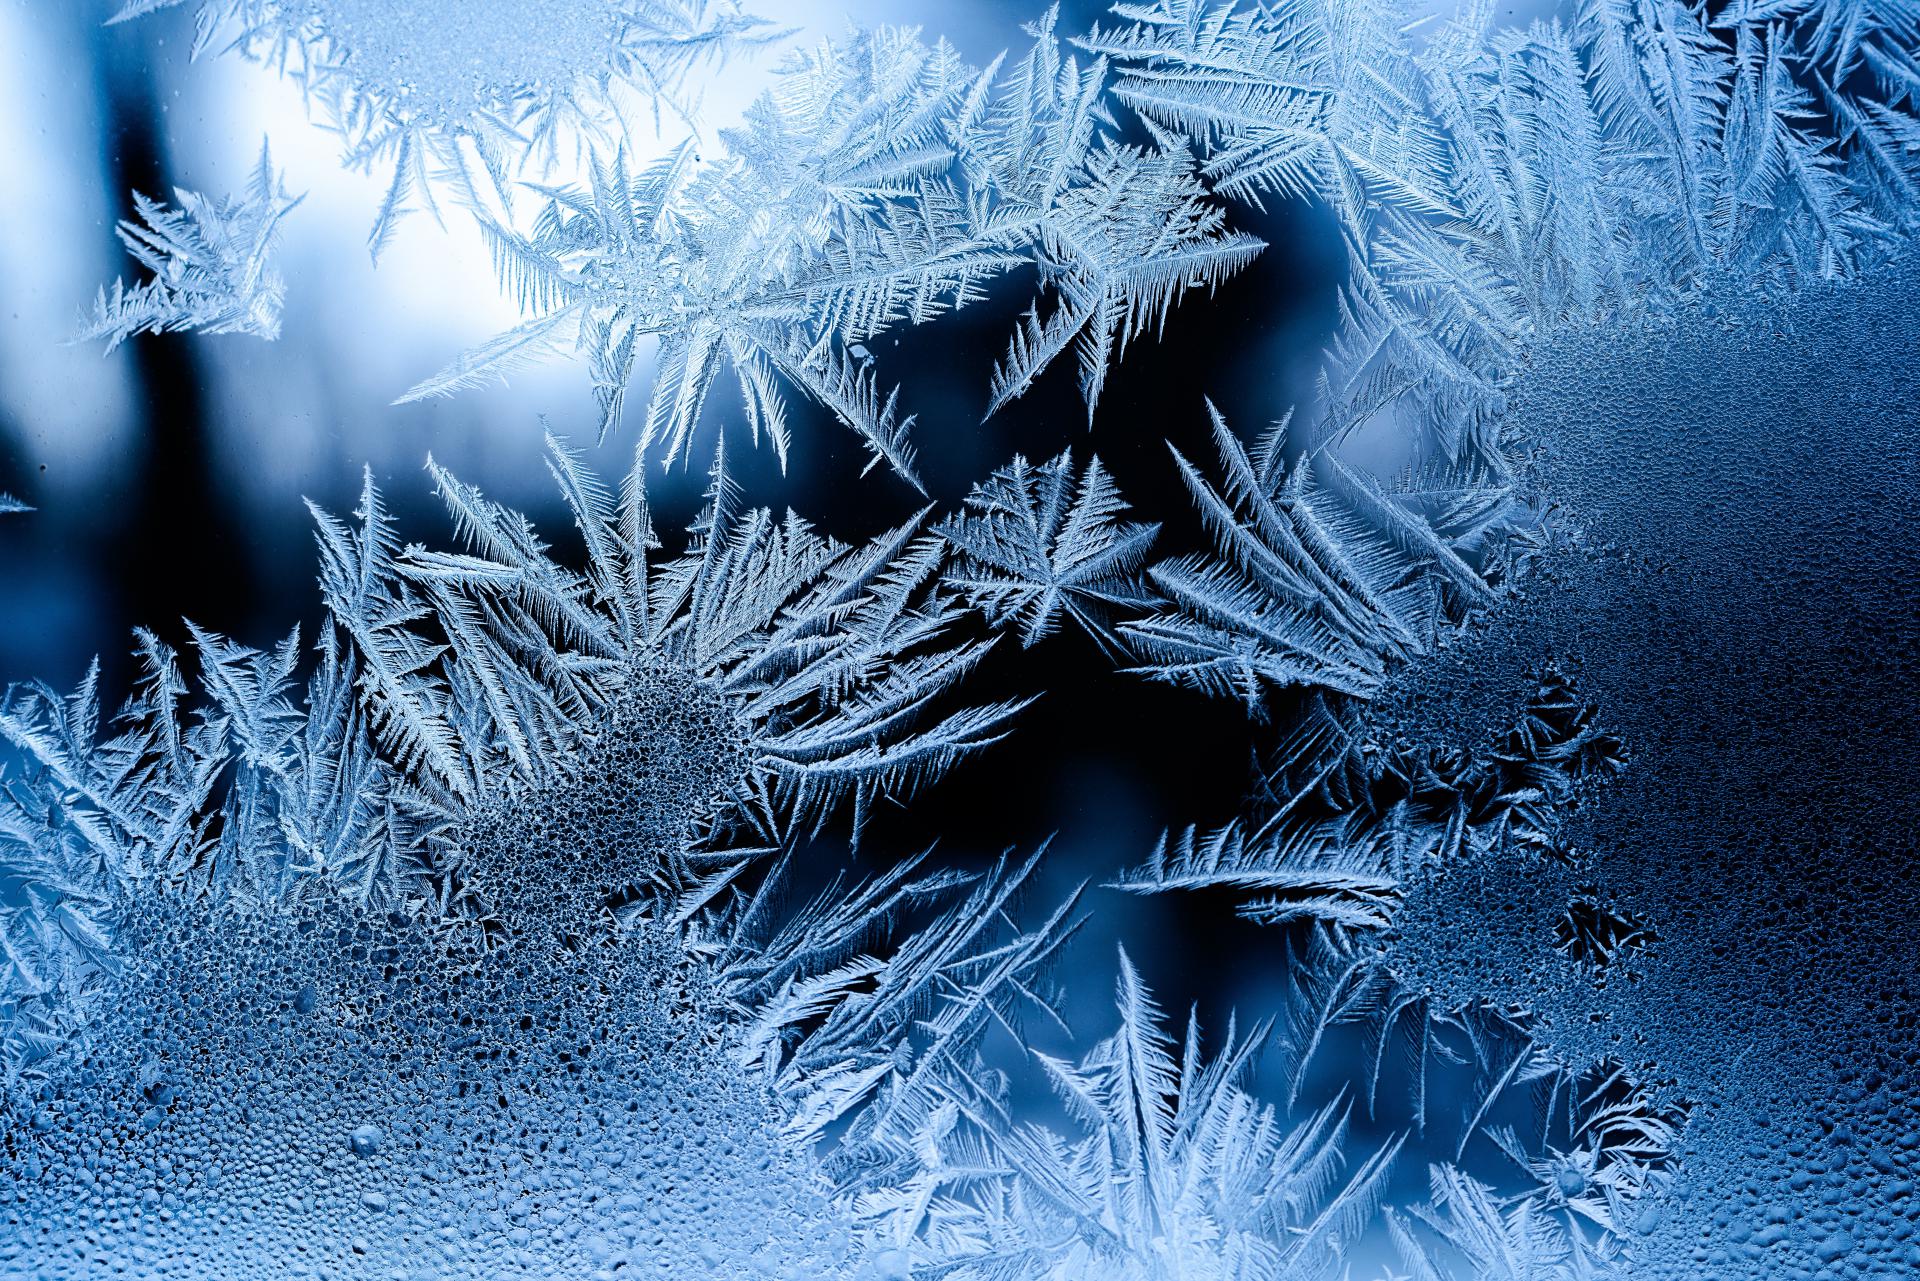 755beautiful-frost-pattern-on-a-window.jpg